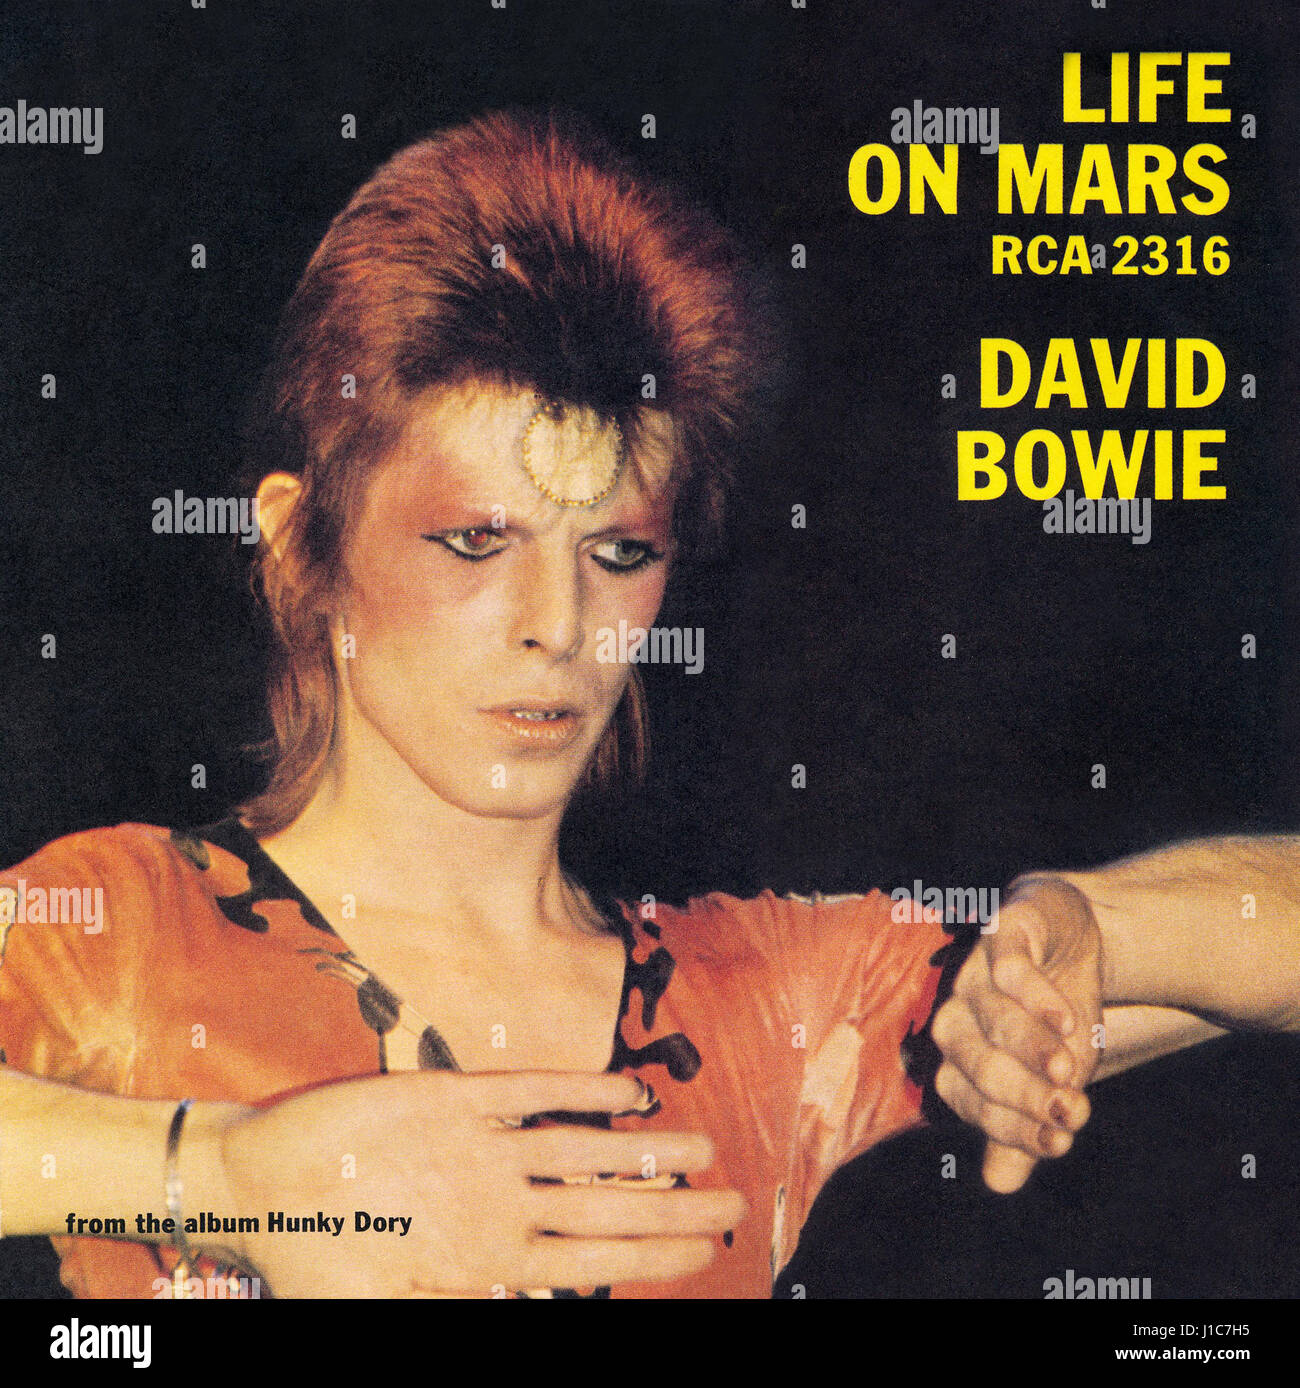 Coperchio anteriore del manicotto di record per il Regno Unito singola vita su Marte da David Bowie. Rilasciato dalla RCA Records il 29 giugno 1973. Originariamente su album Hunky Dory da dicembre 1971. Foto Stock